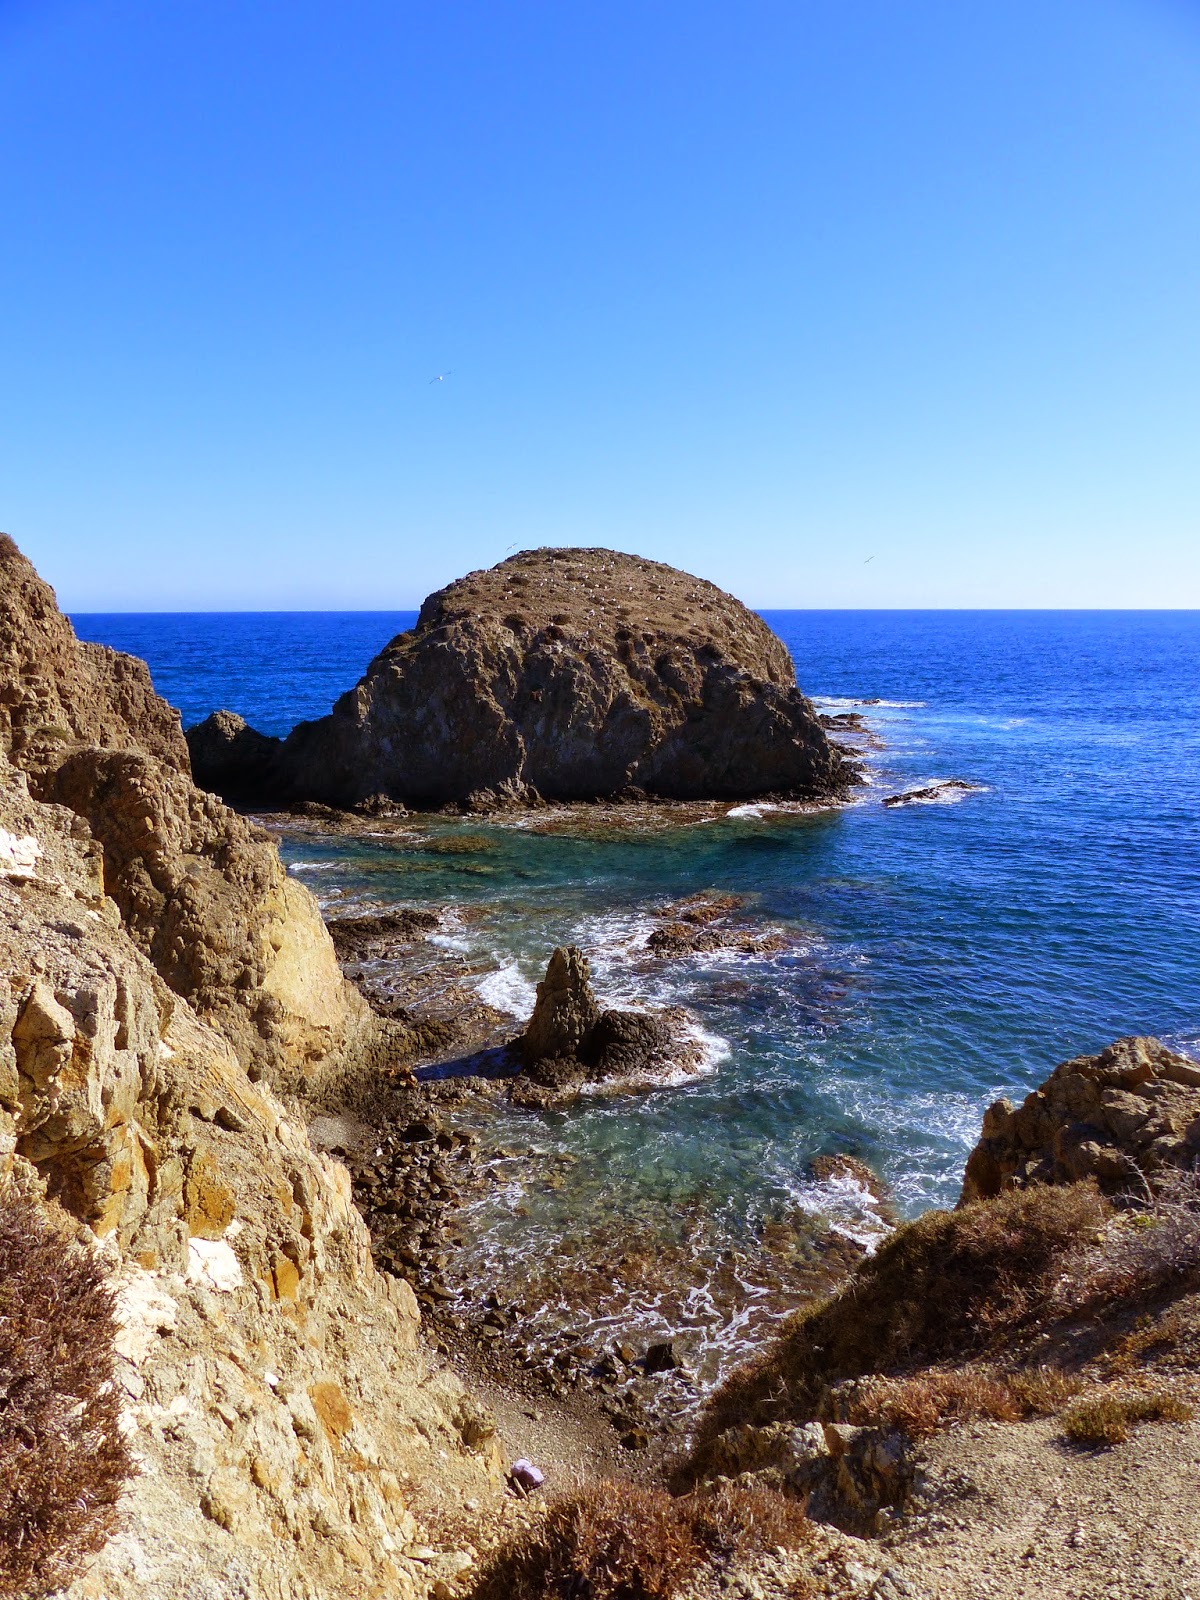 The rocky outcrop at La Isleta